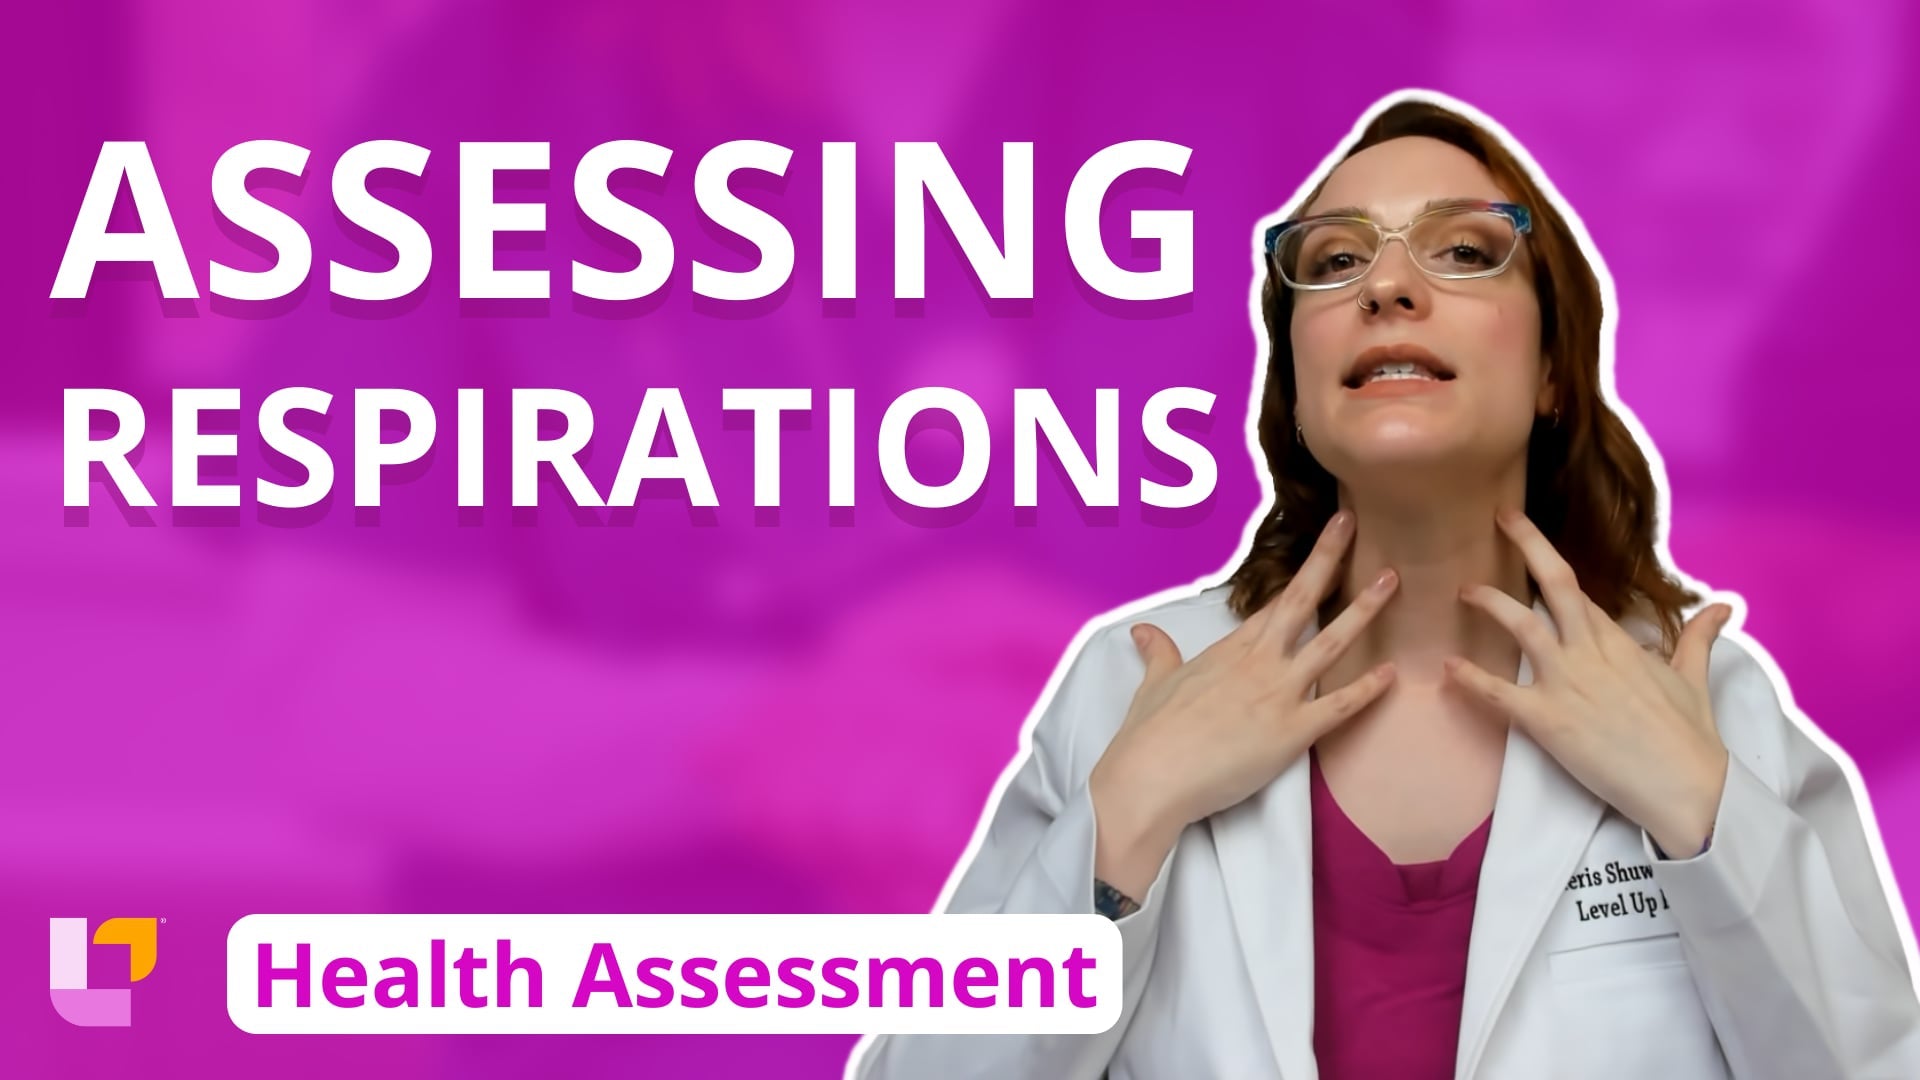 Health Assessment, part 6: Assessing Respirations - LevelUpRN